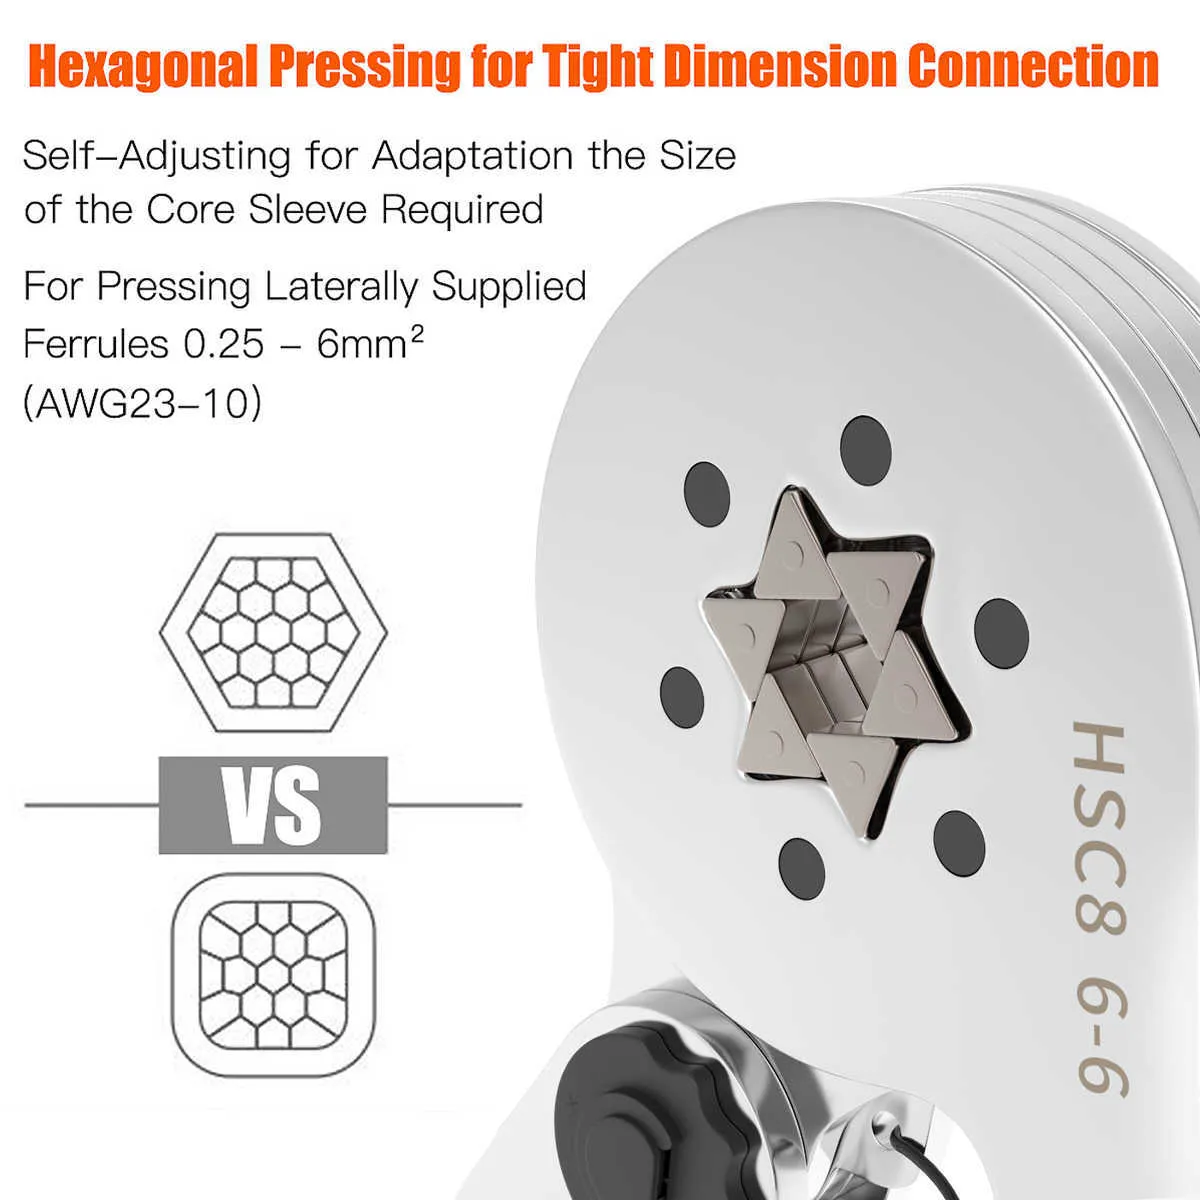 Altıgen yüksük kıvrım alet tel kabuğu hsc8 6-6 AWG23-10 için kendi kendine ayarlanabilir cırcırlama cezası (0.25-6.0mm)